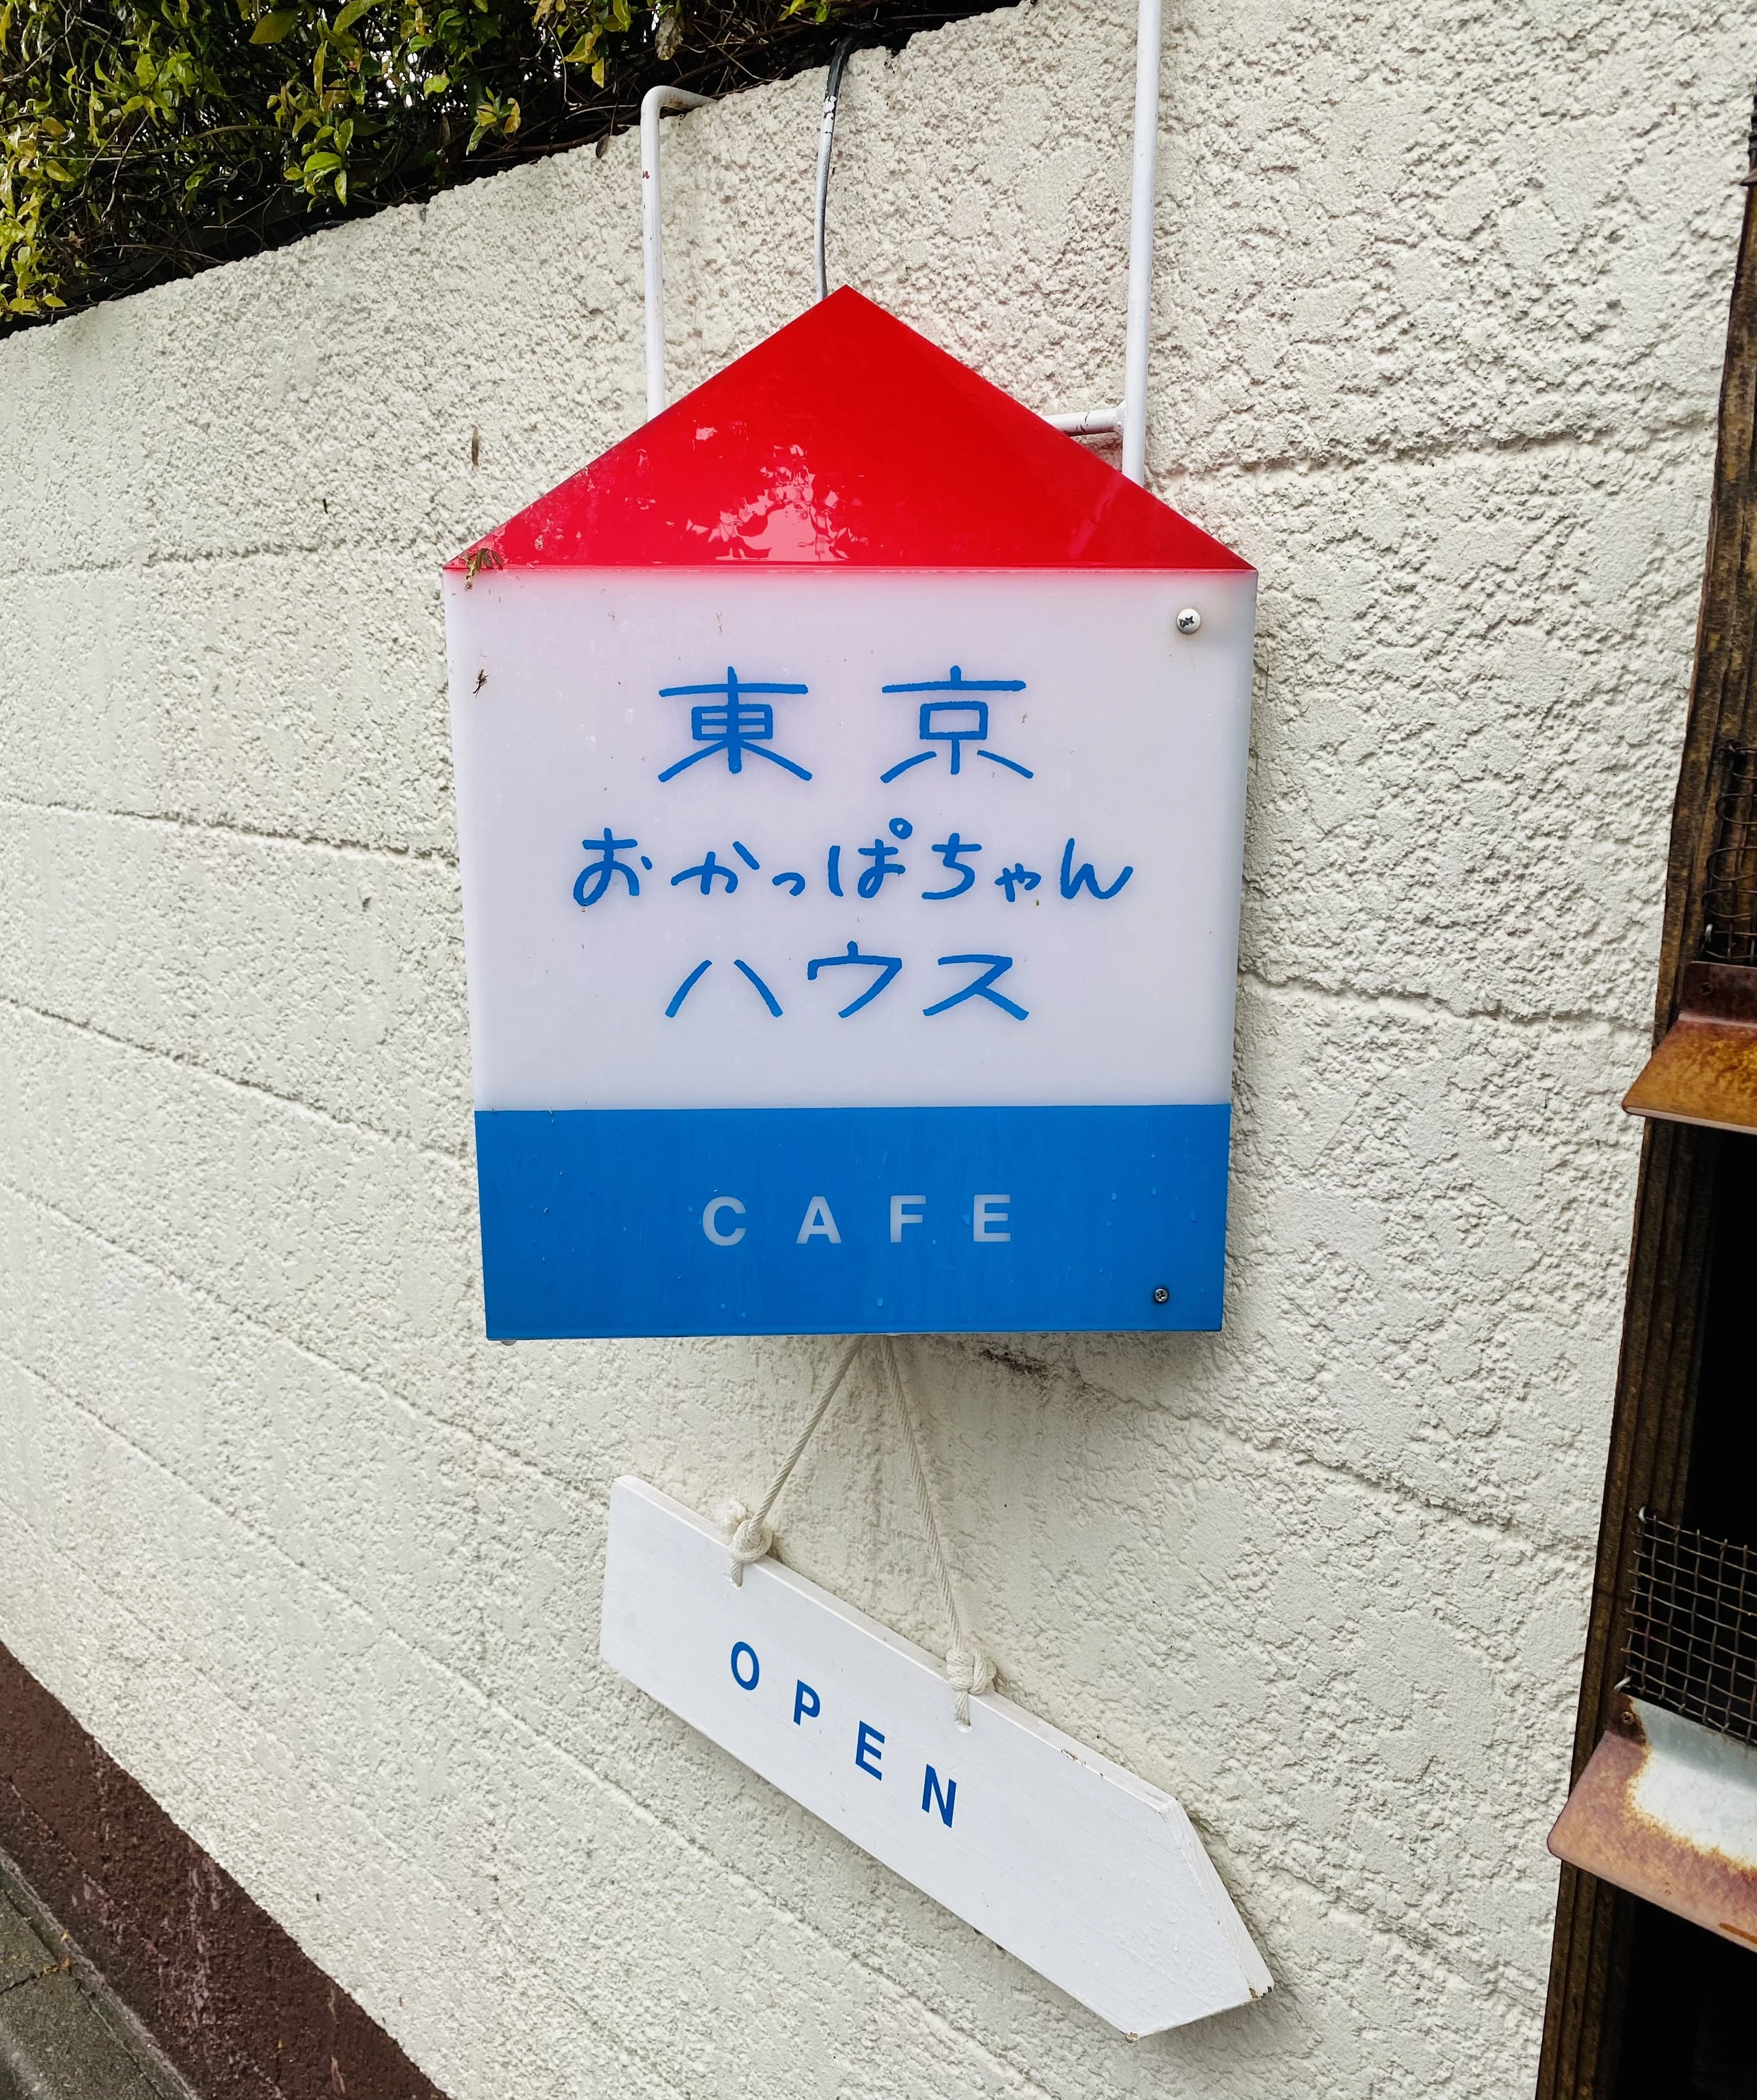 【雨のソロ散歩】西武線・石神井エリアで「ハンドニット」と「カフェ」をめぐる午後_1_1